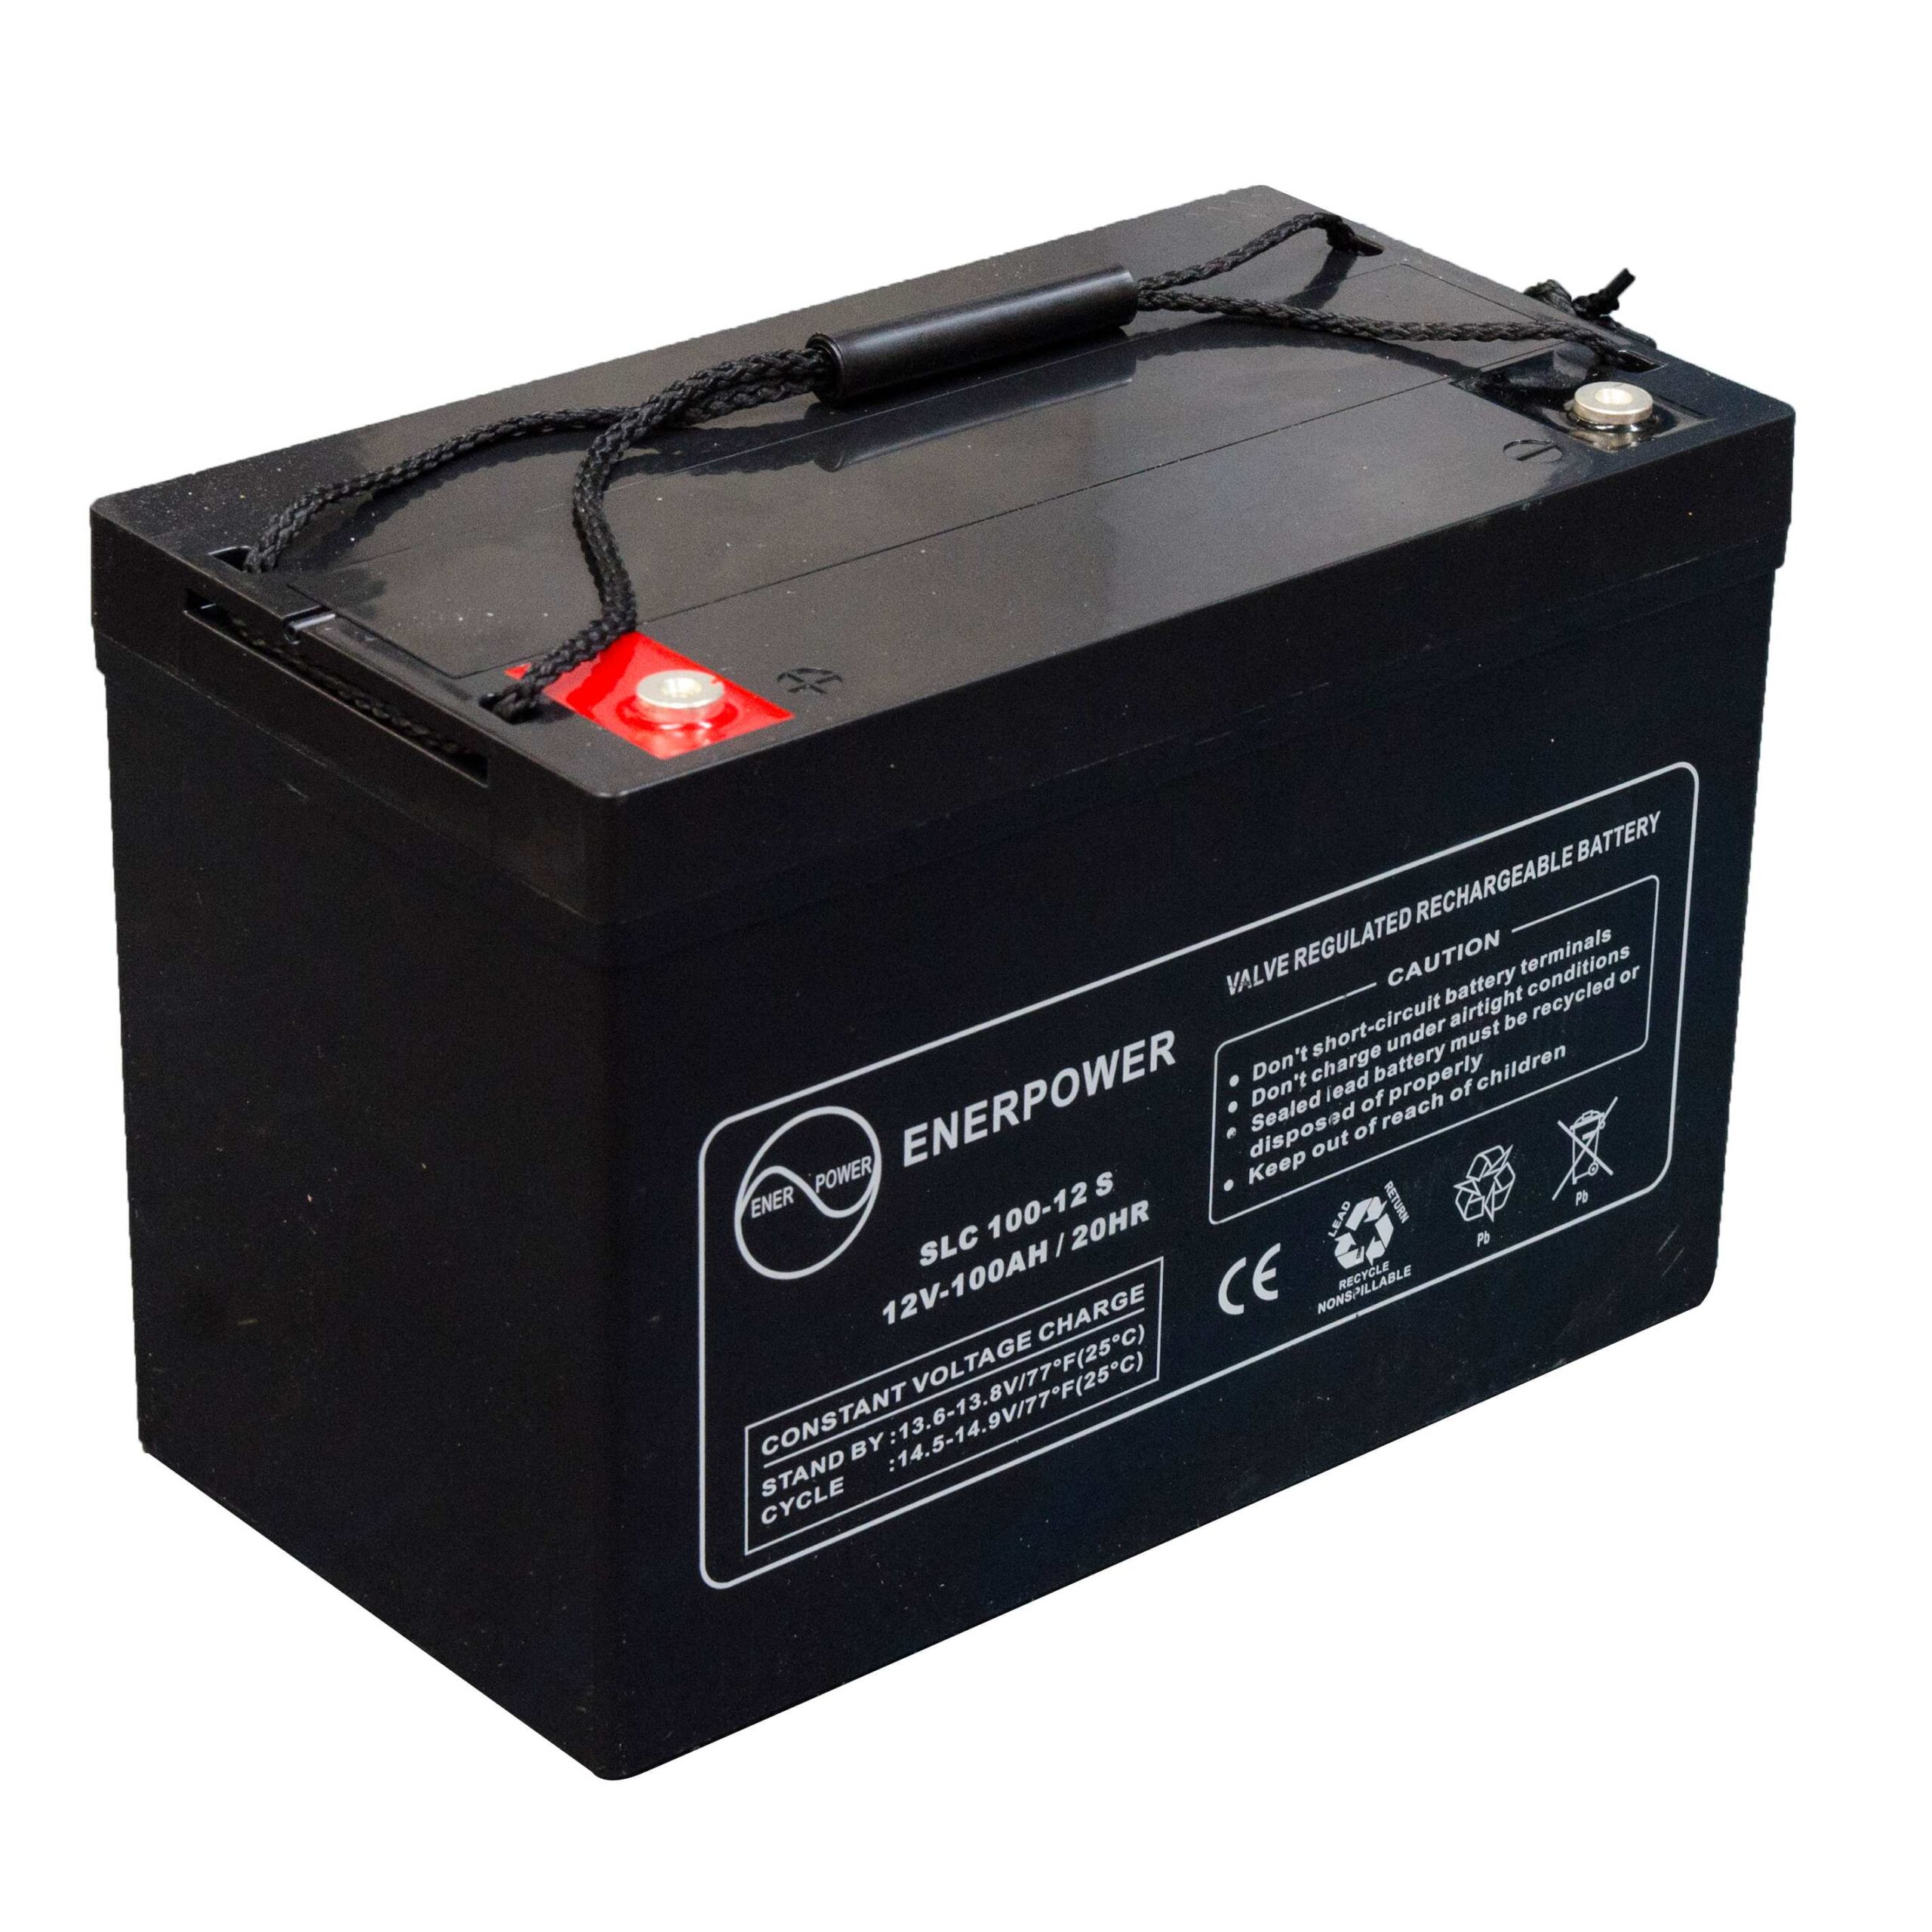 SLC100-12S 12V 100Ah AGM ENERPOWER Batterie